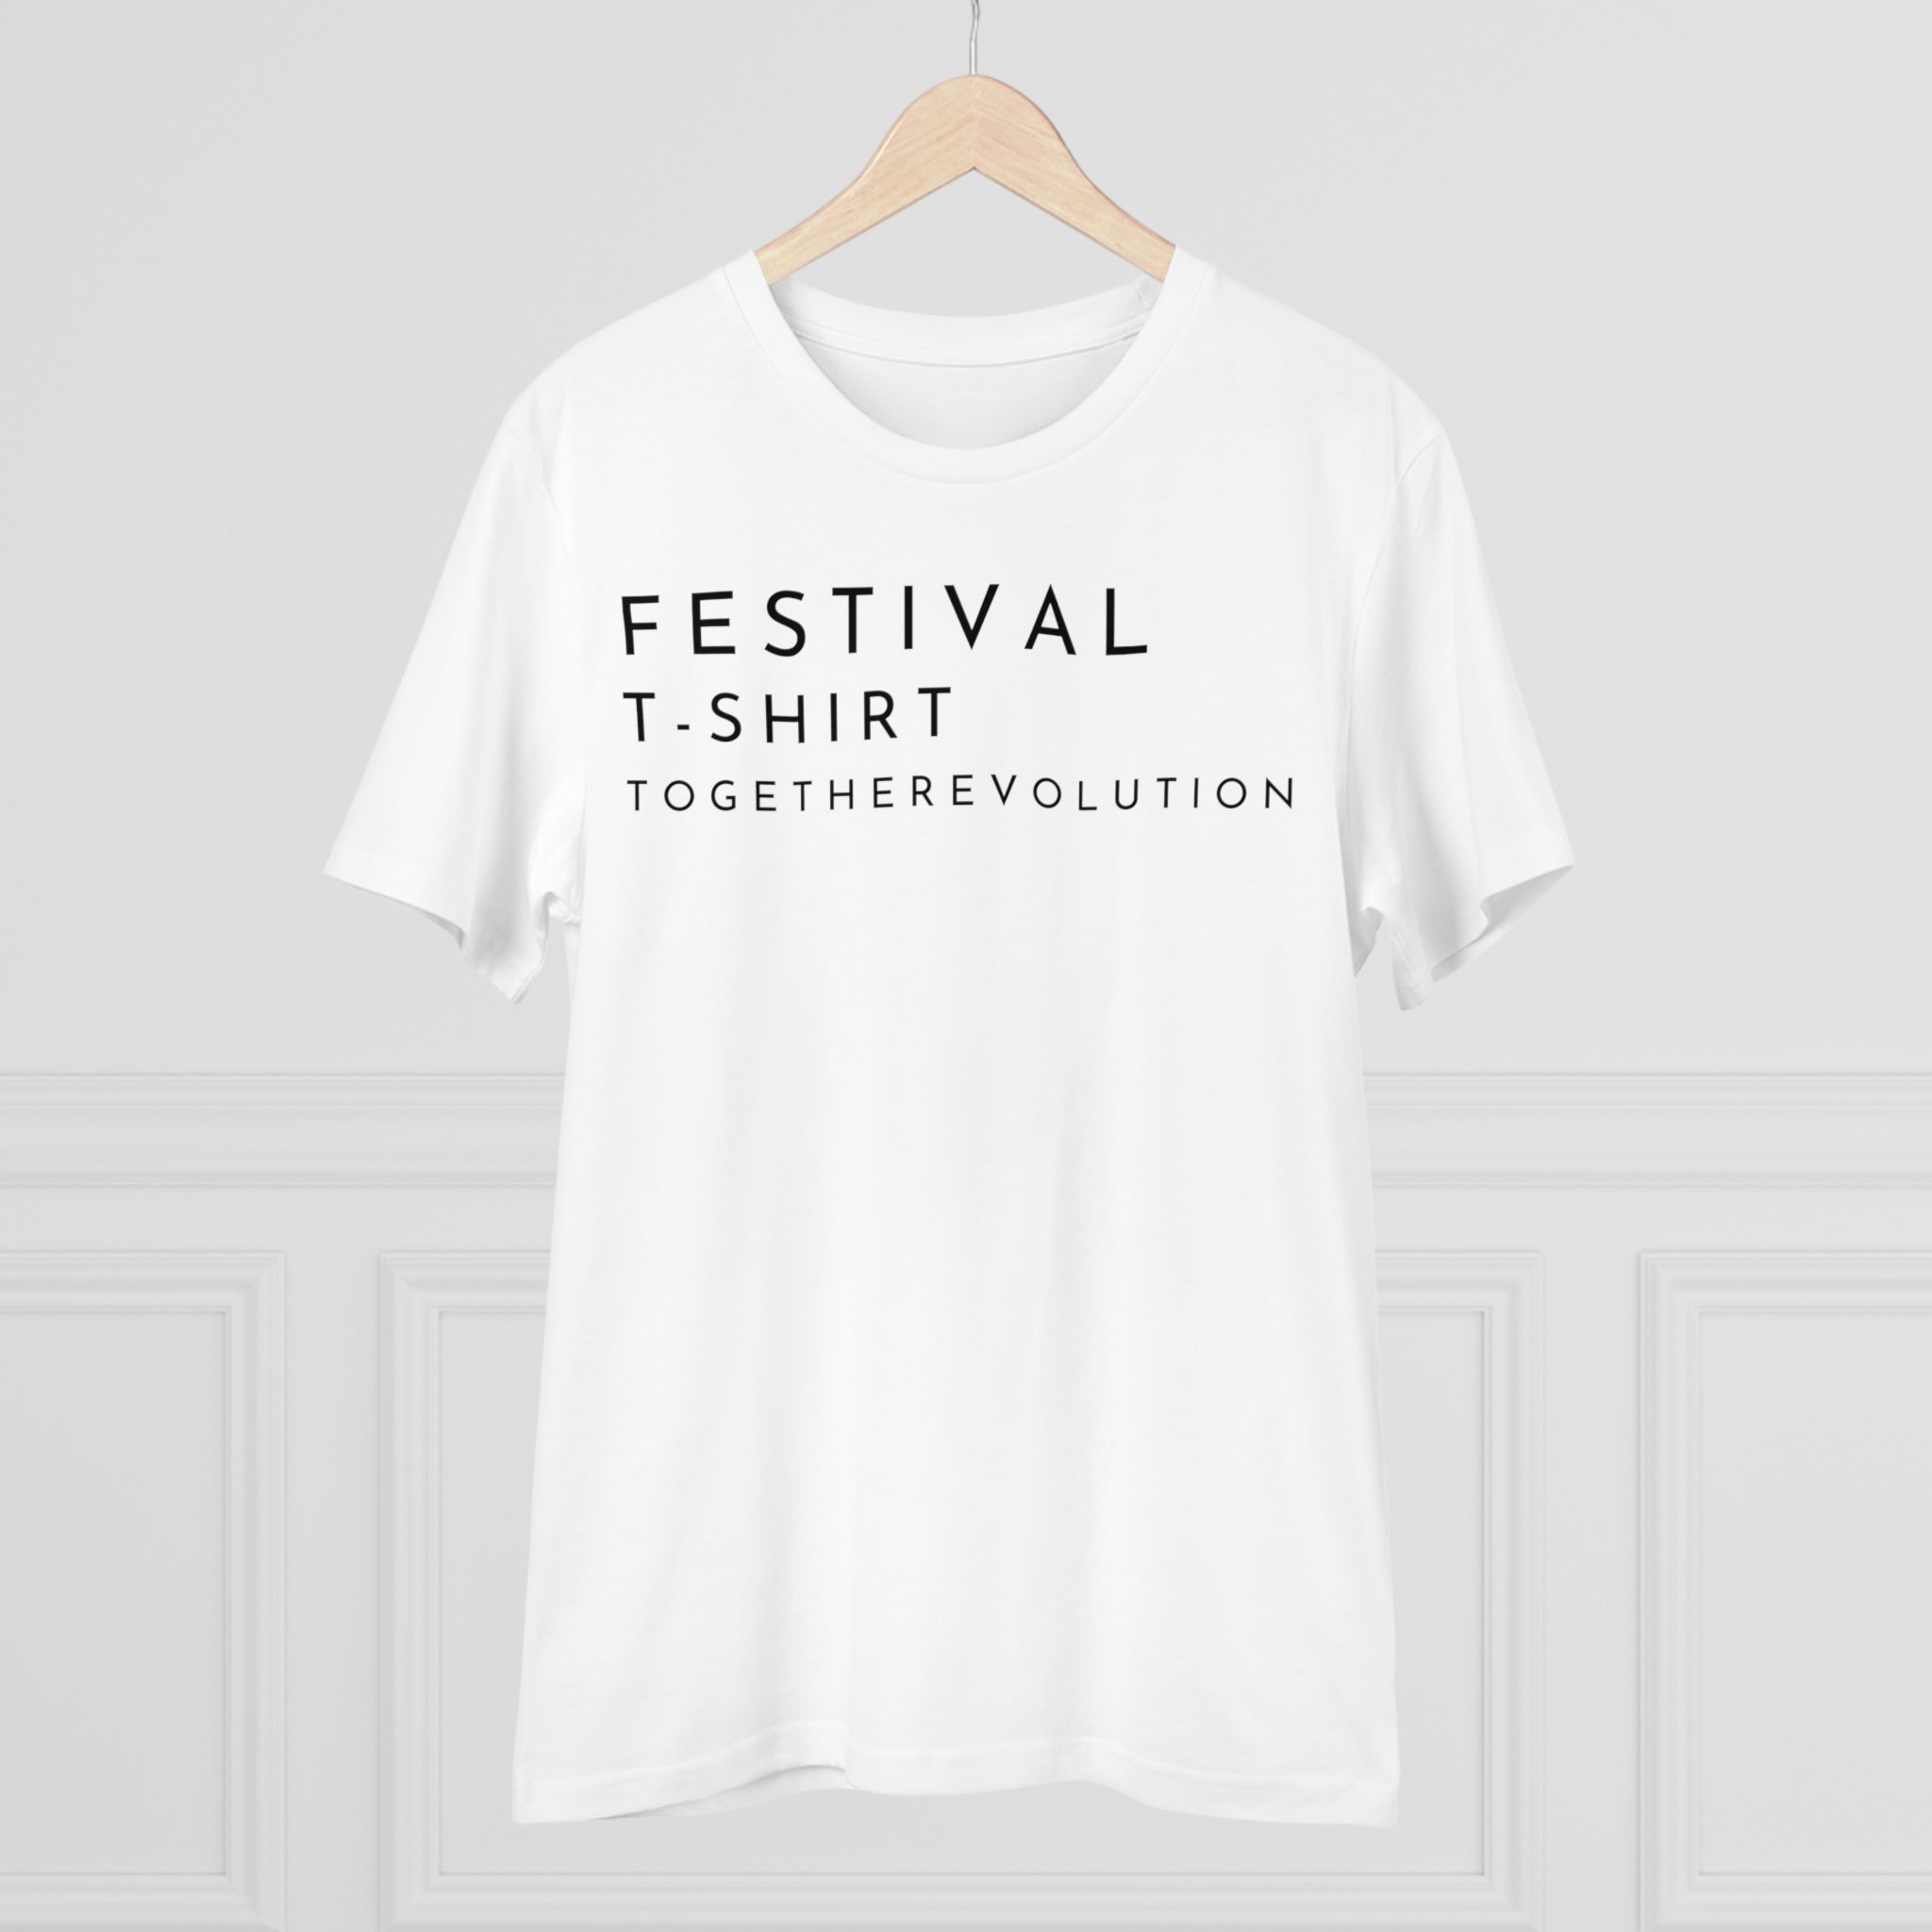 Festival T-Shirt